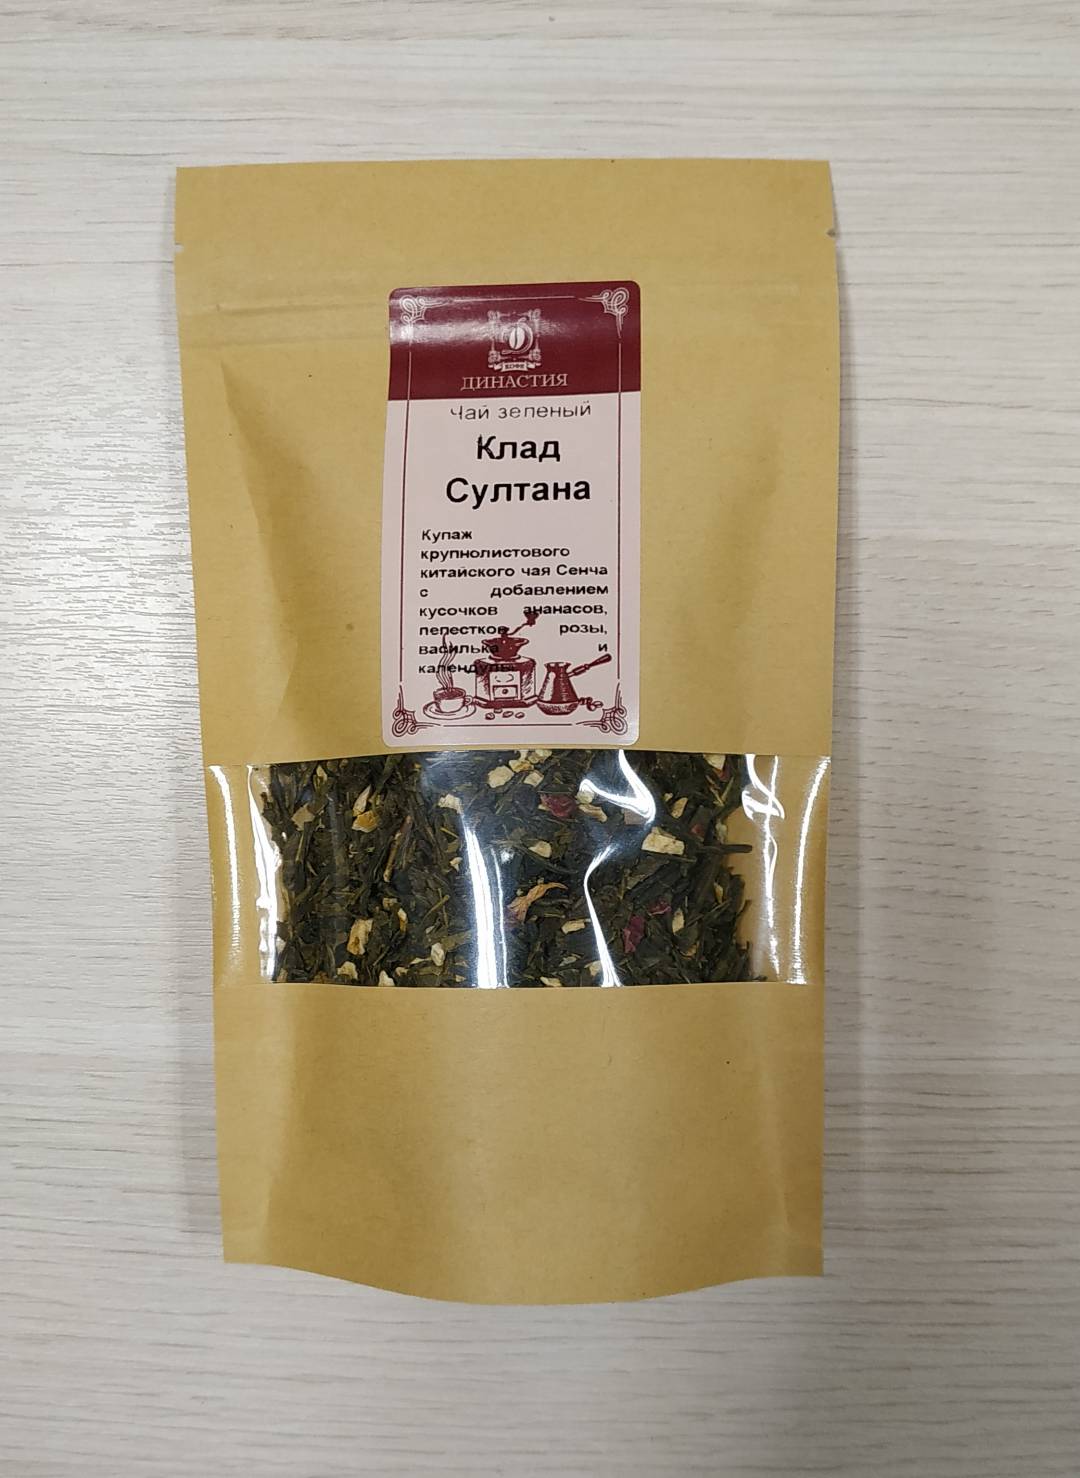 Купить онлайн Чай зеленый Клад Султана, 50гр в интернет-магазине Беришка с доставкой по Хабаровску и по России недорого.